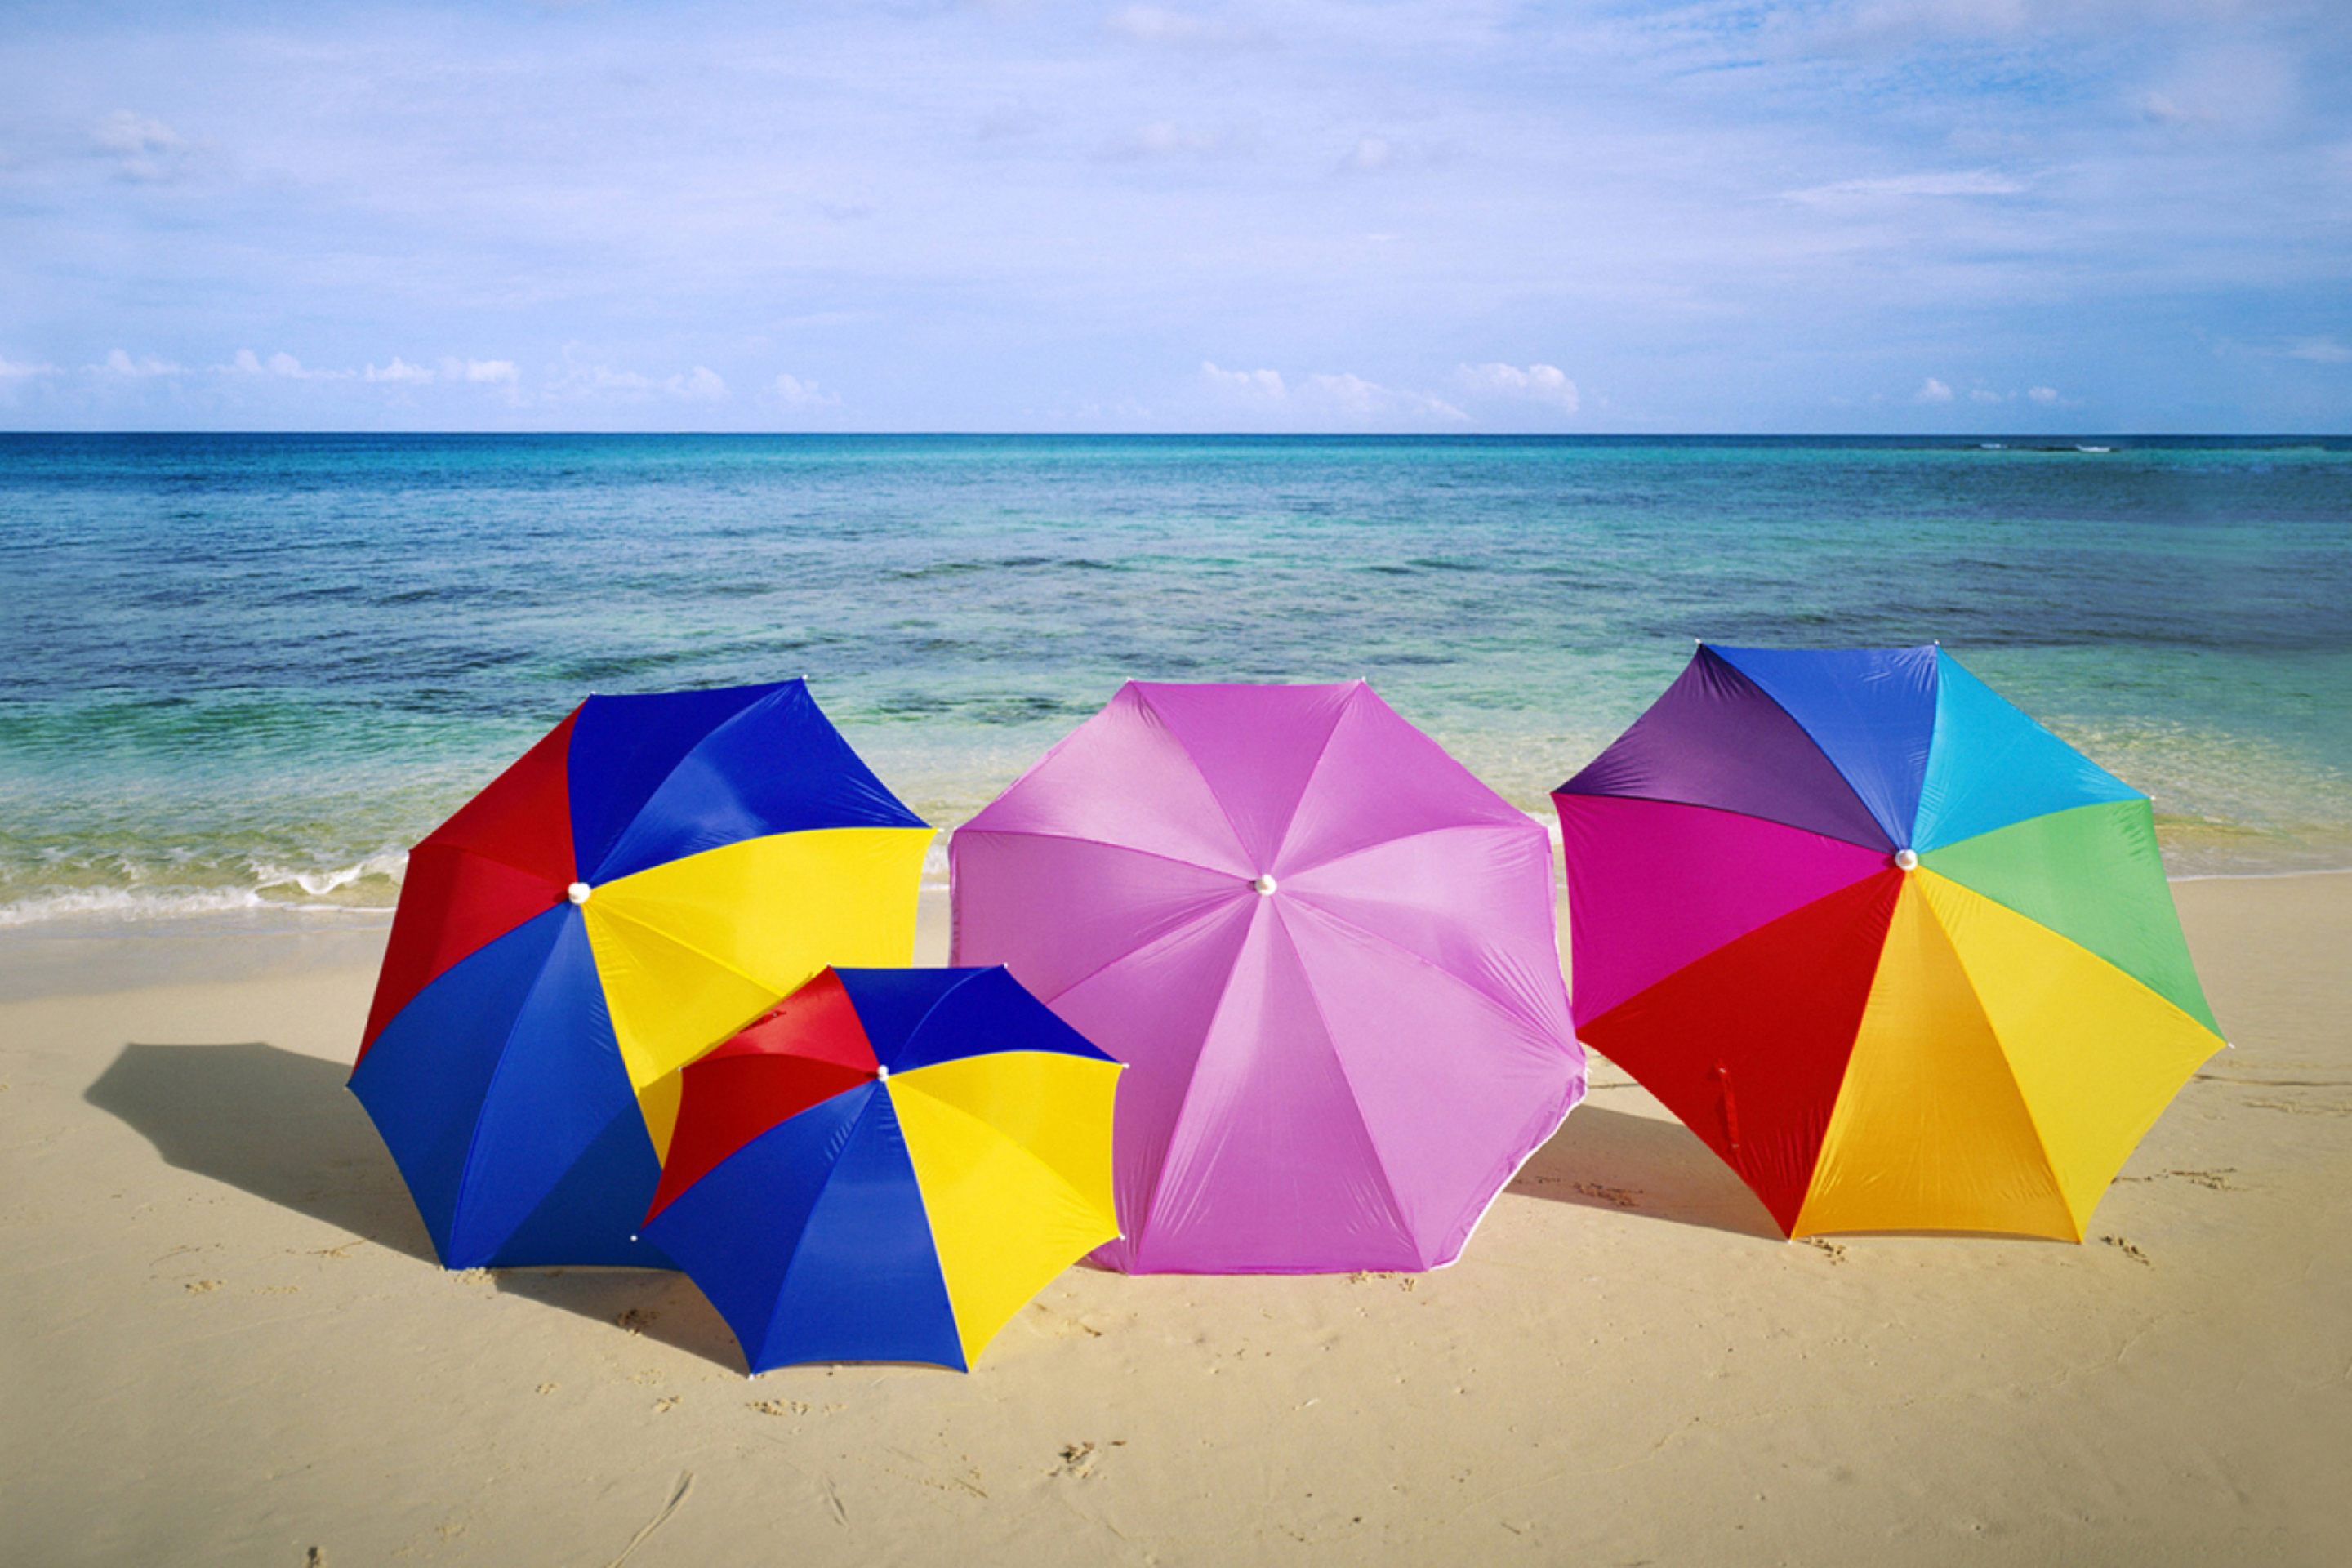 Обои Umbrellas On The Beach 2880x1920